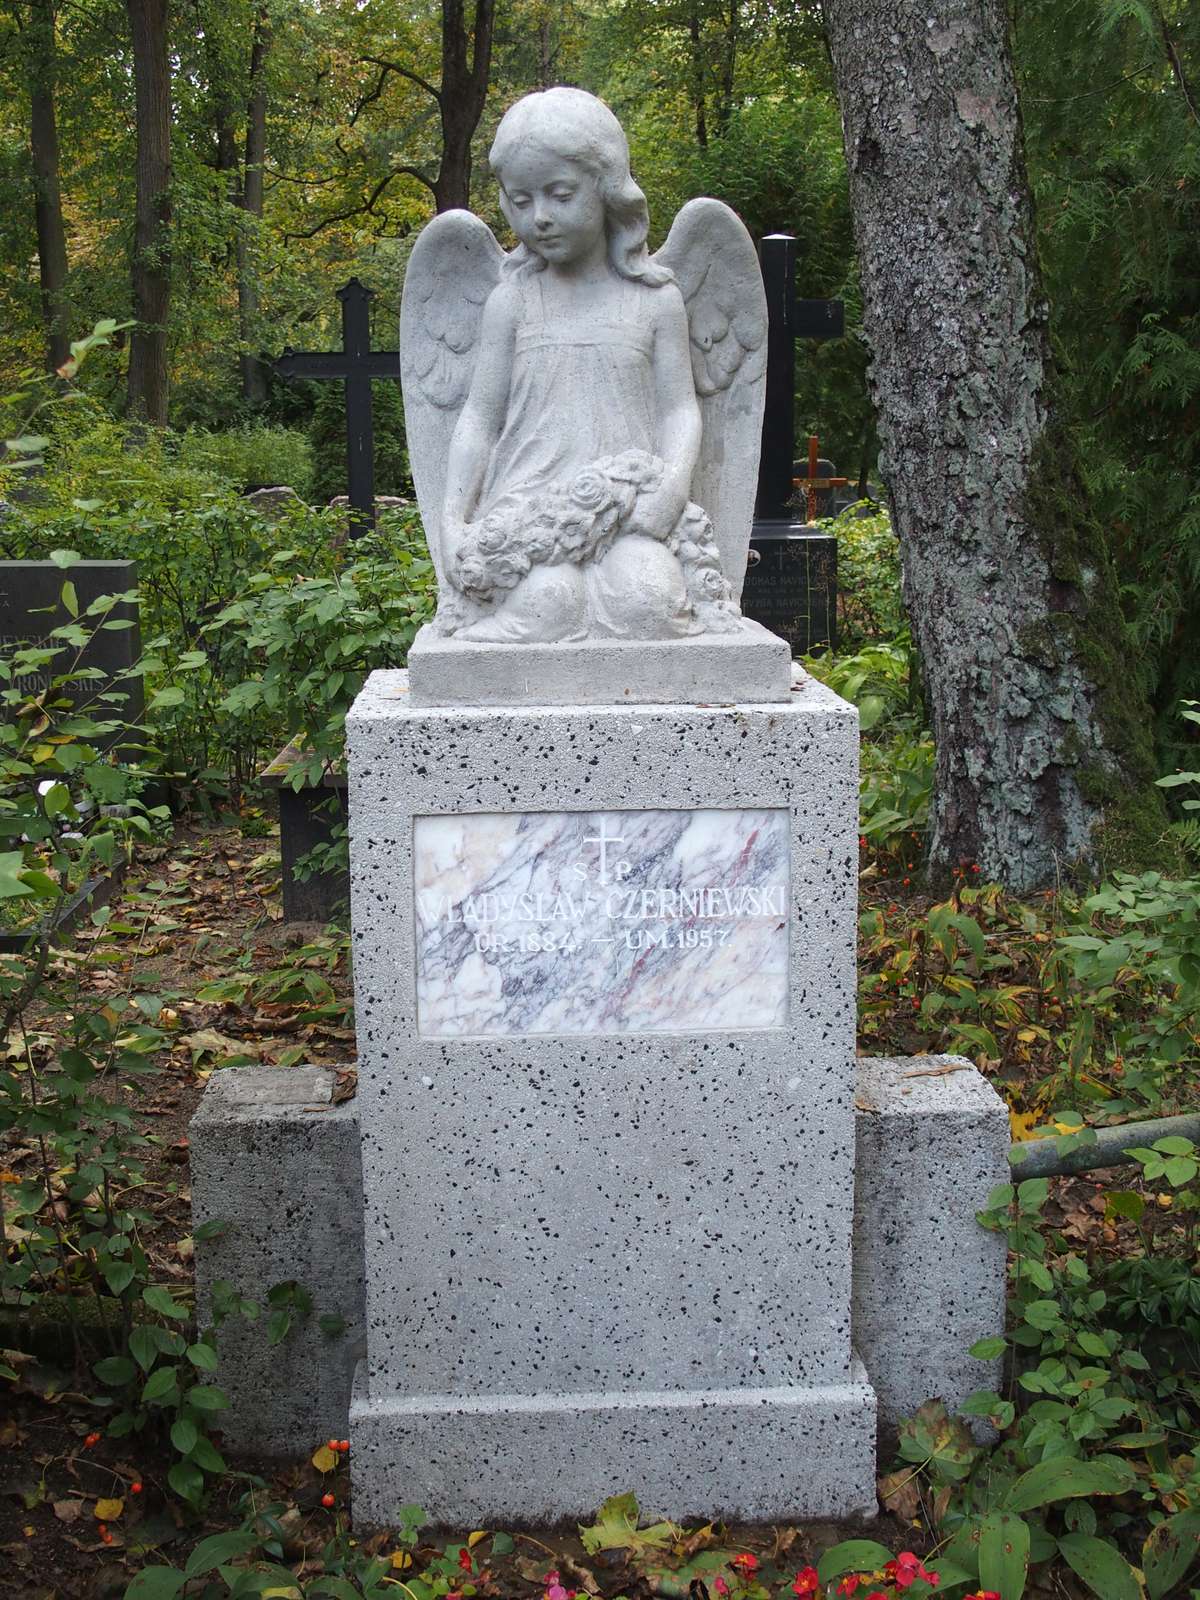 Tombstone of Wladyslaw Czerniewski